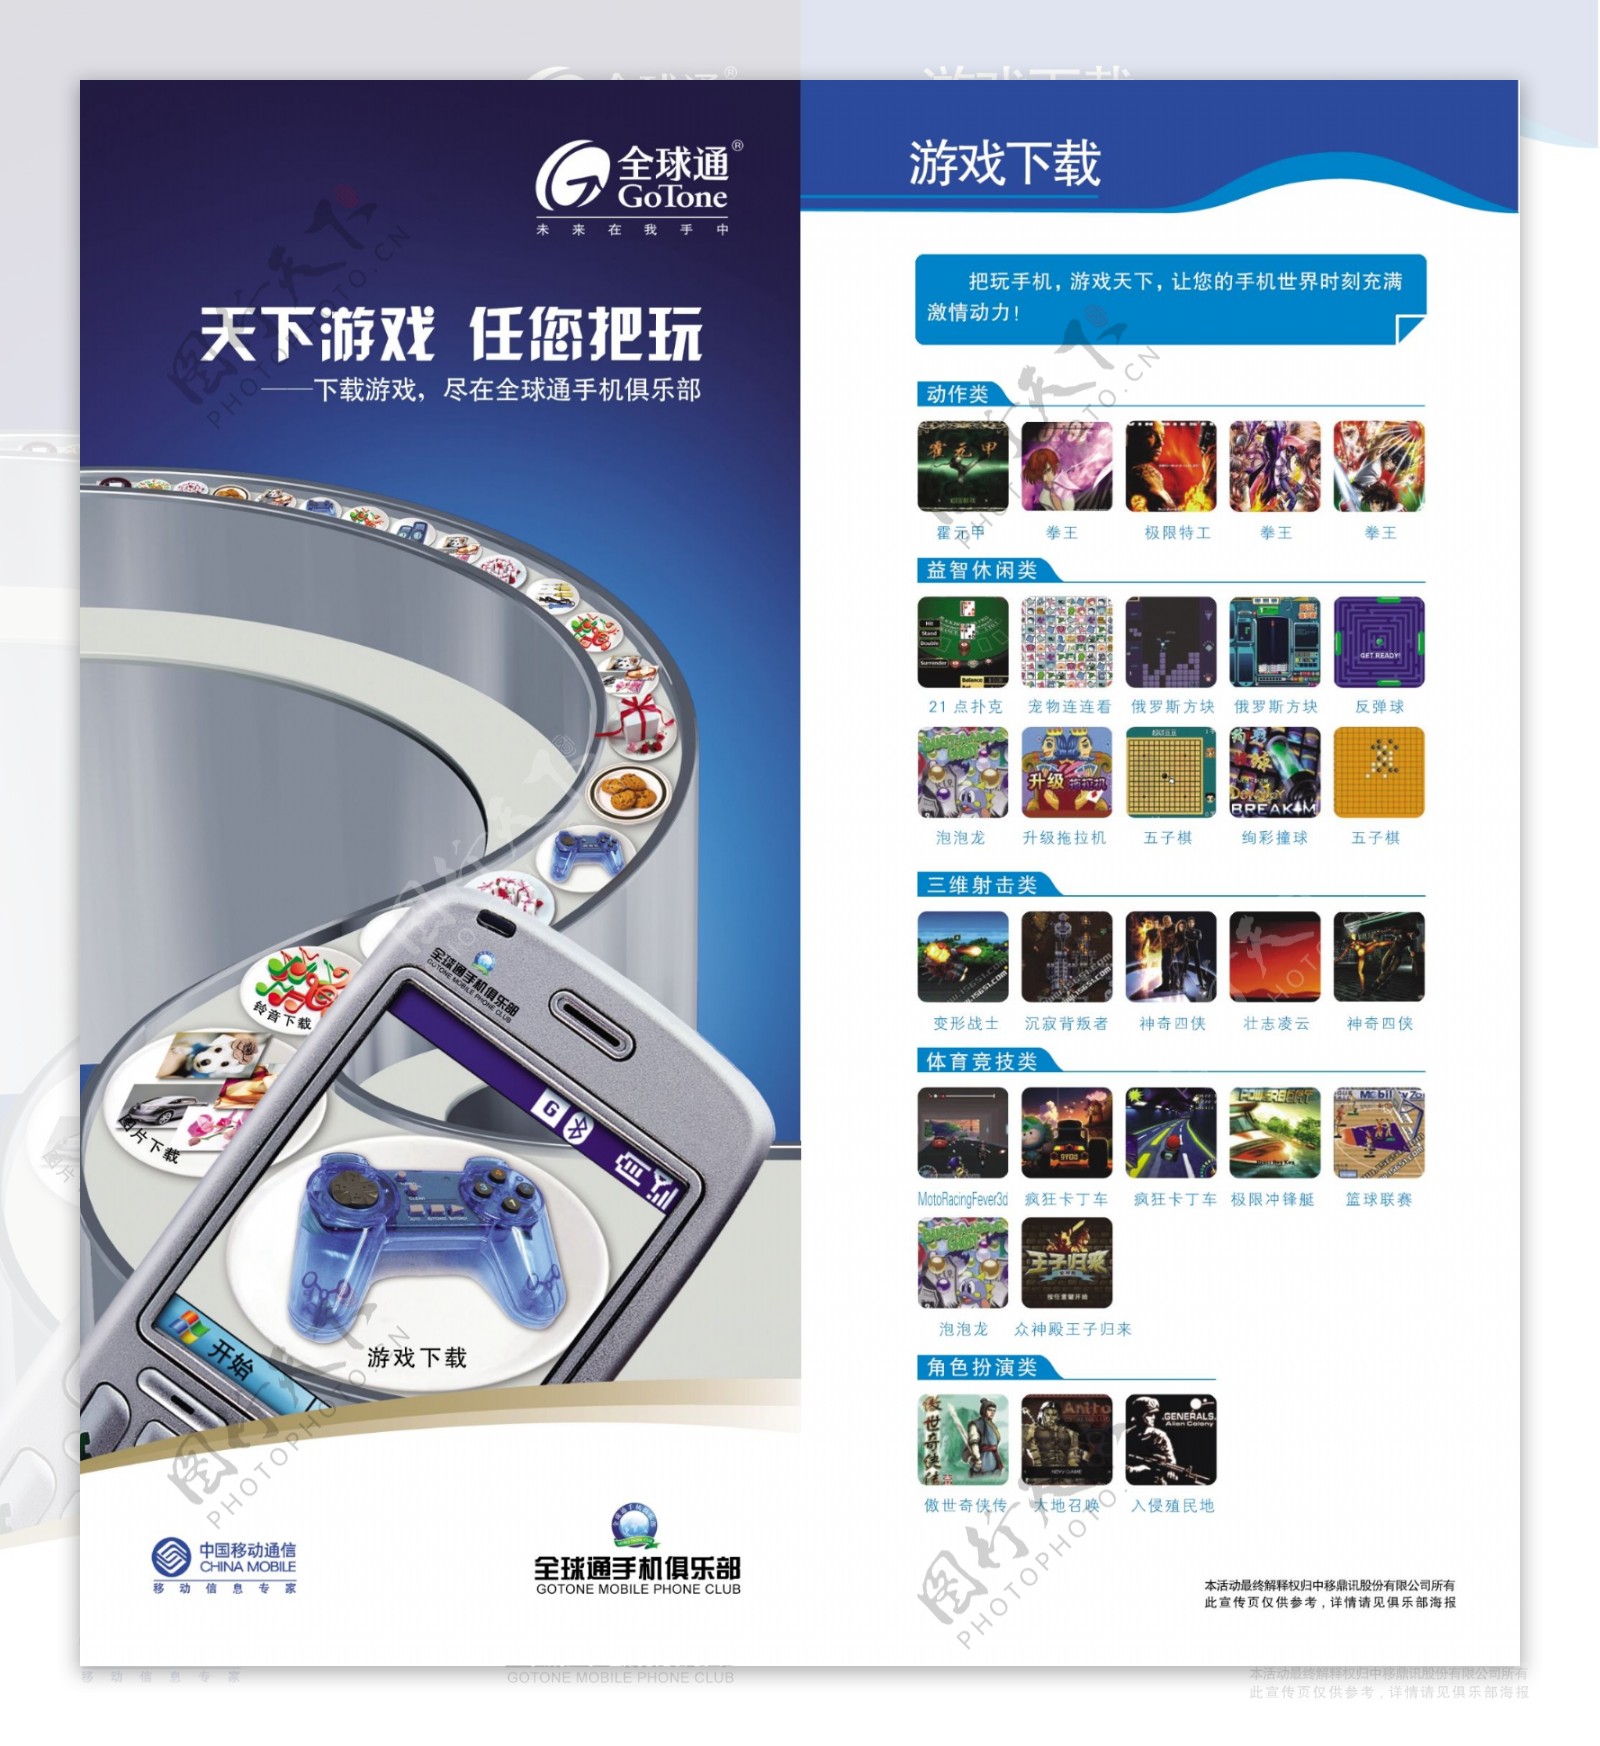 龙腾广告平面广告PSD分层素材源文件移动电信手机全球通游戏介绍